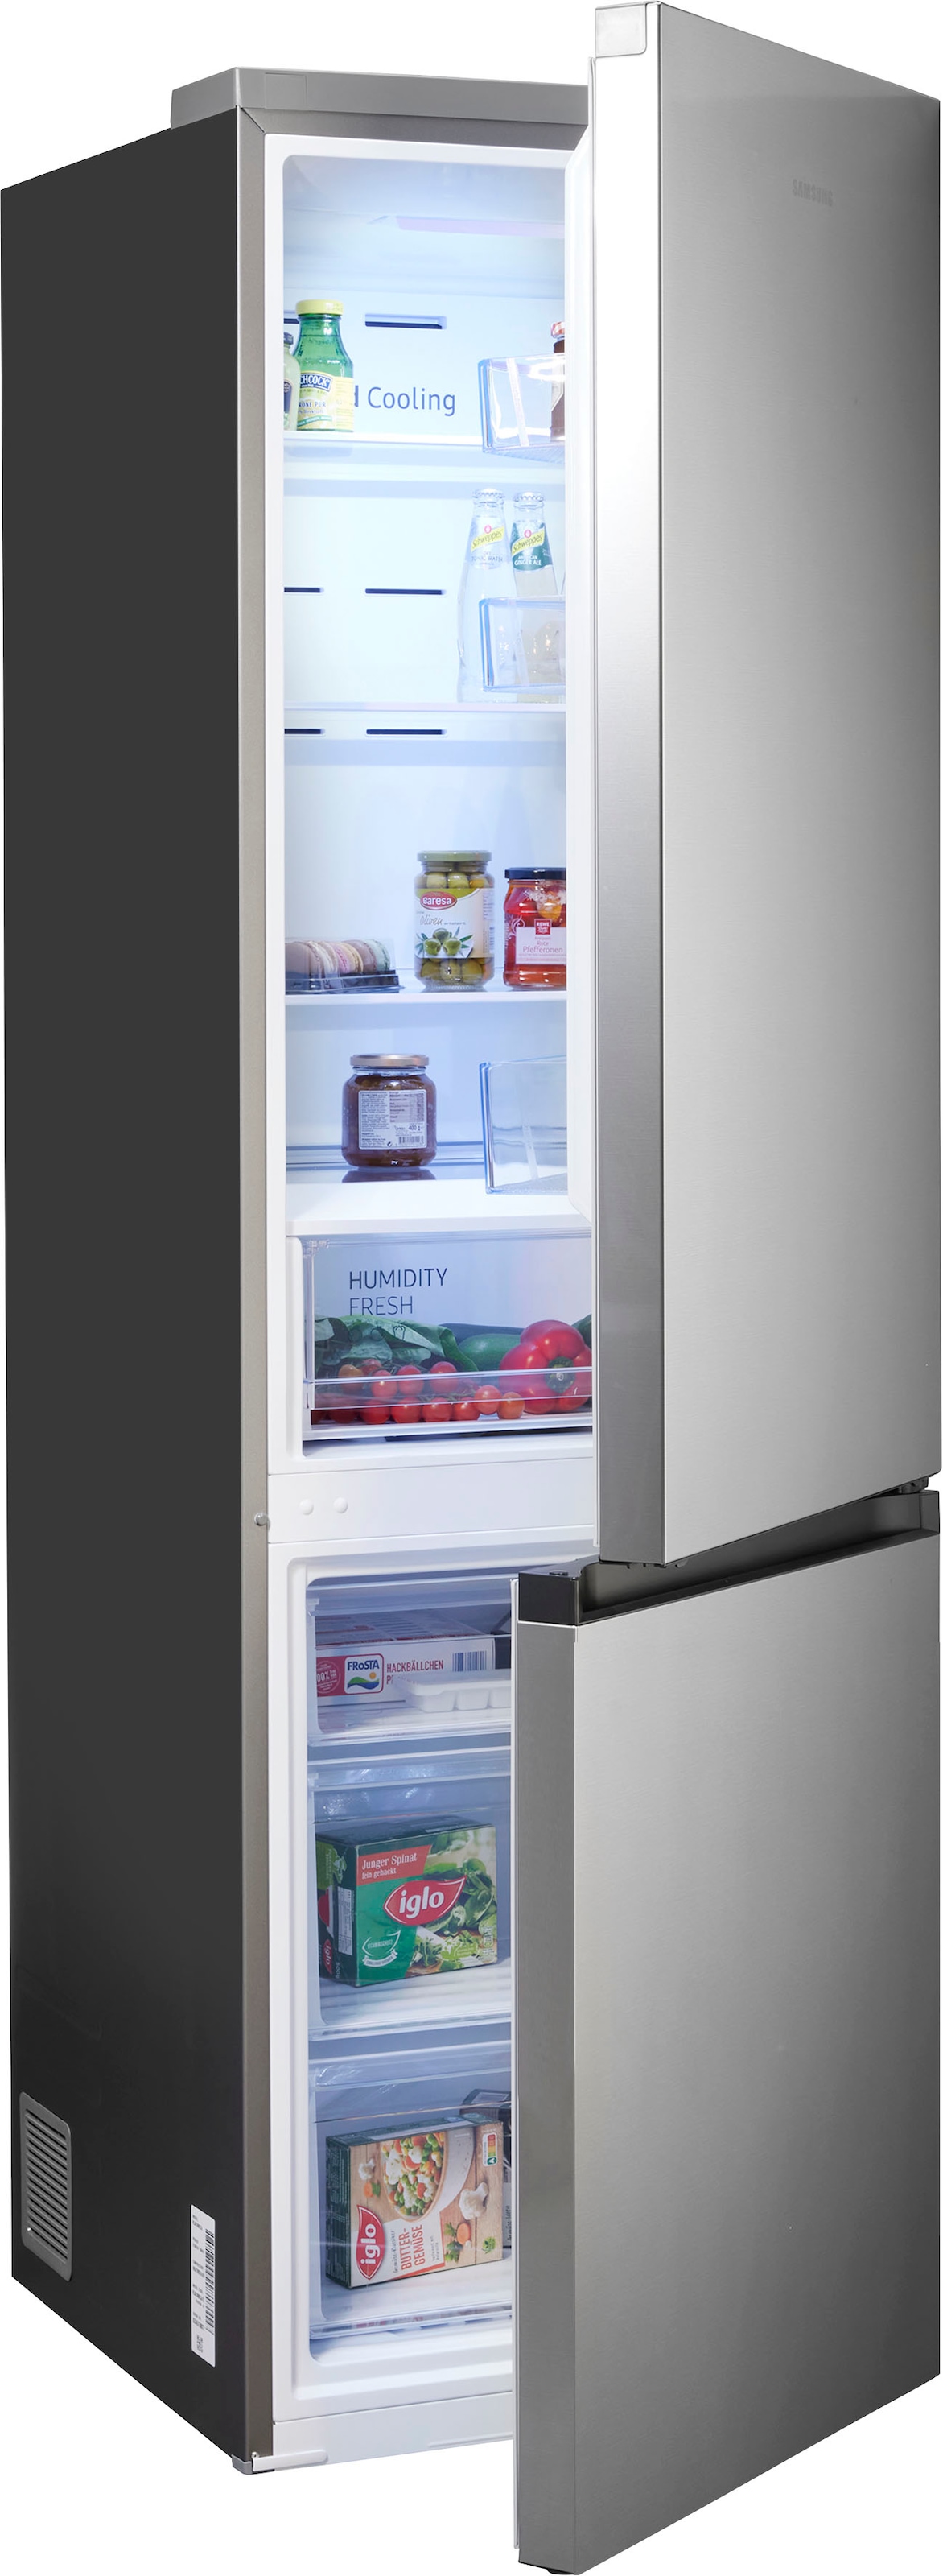 Samsung Kühlschränke auf Raten bestellen